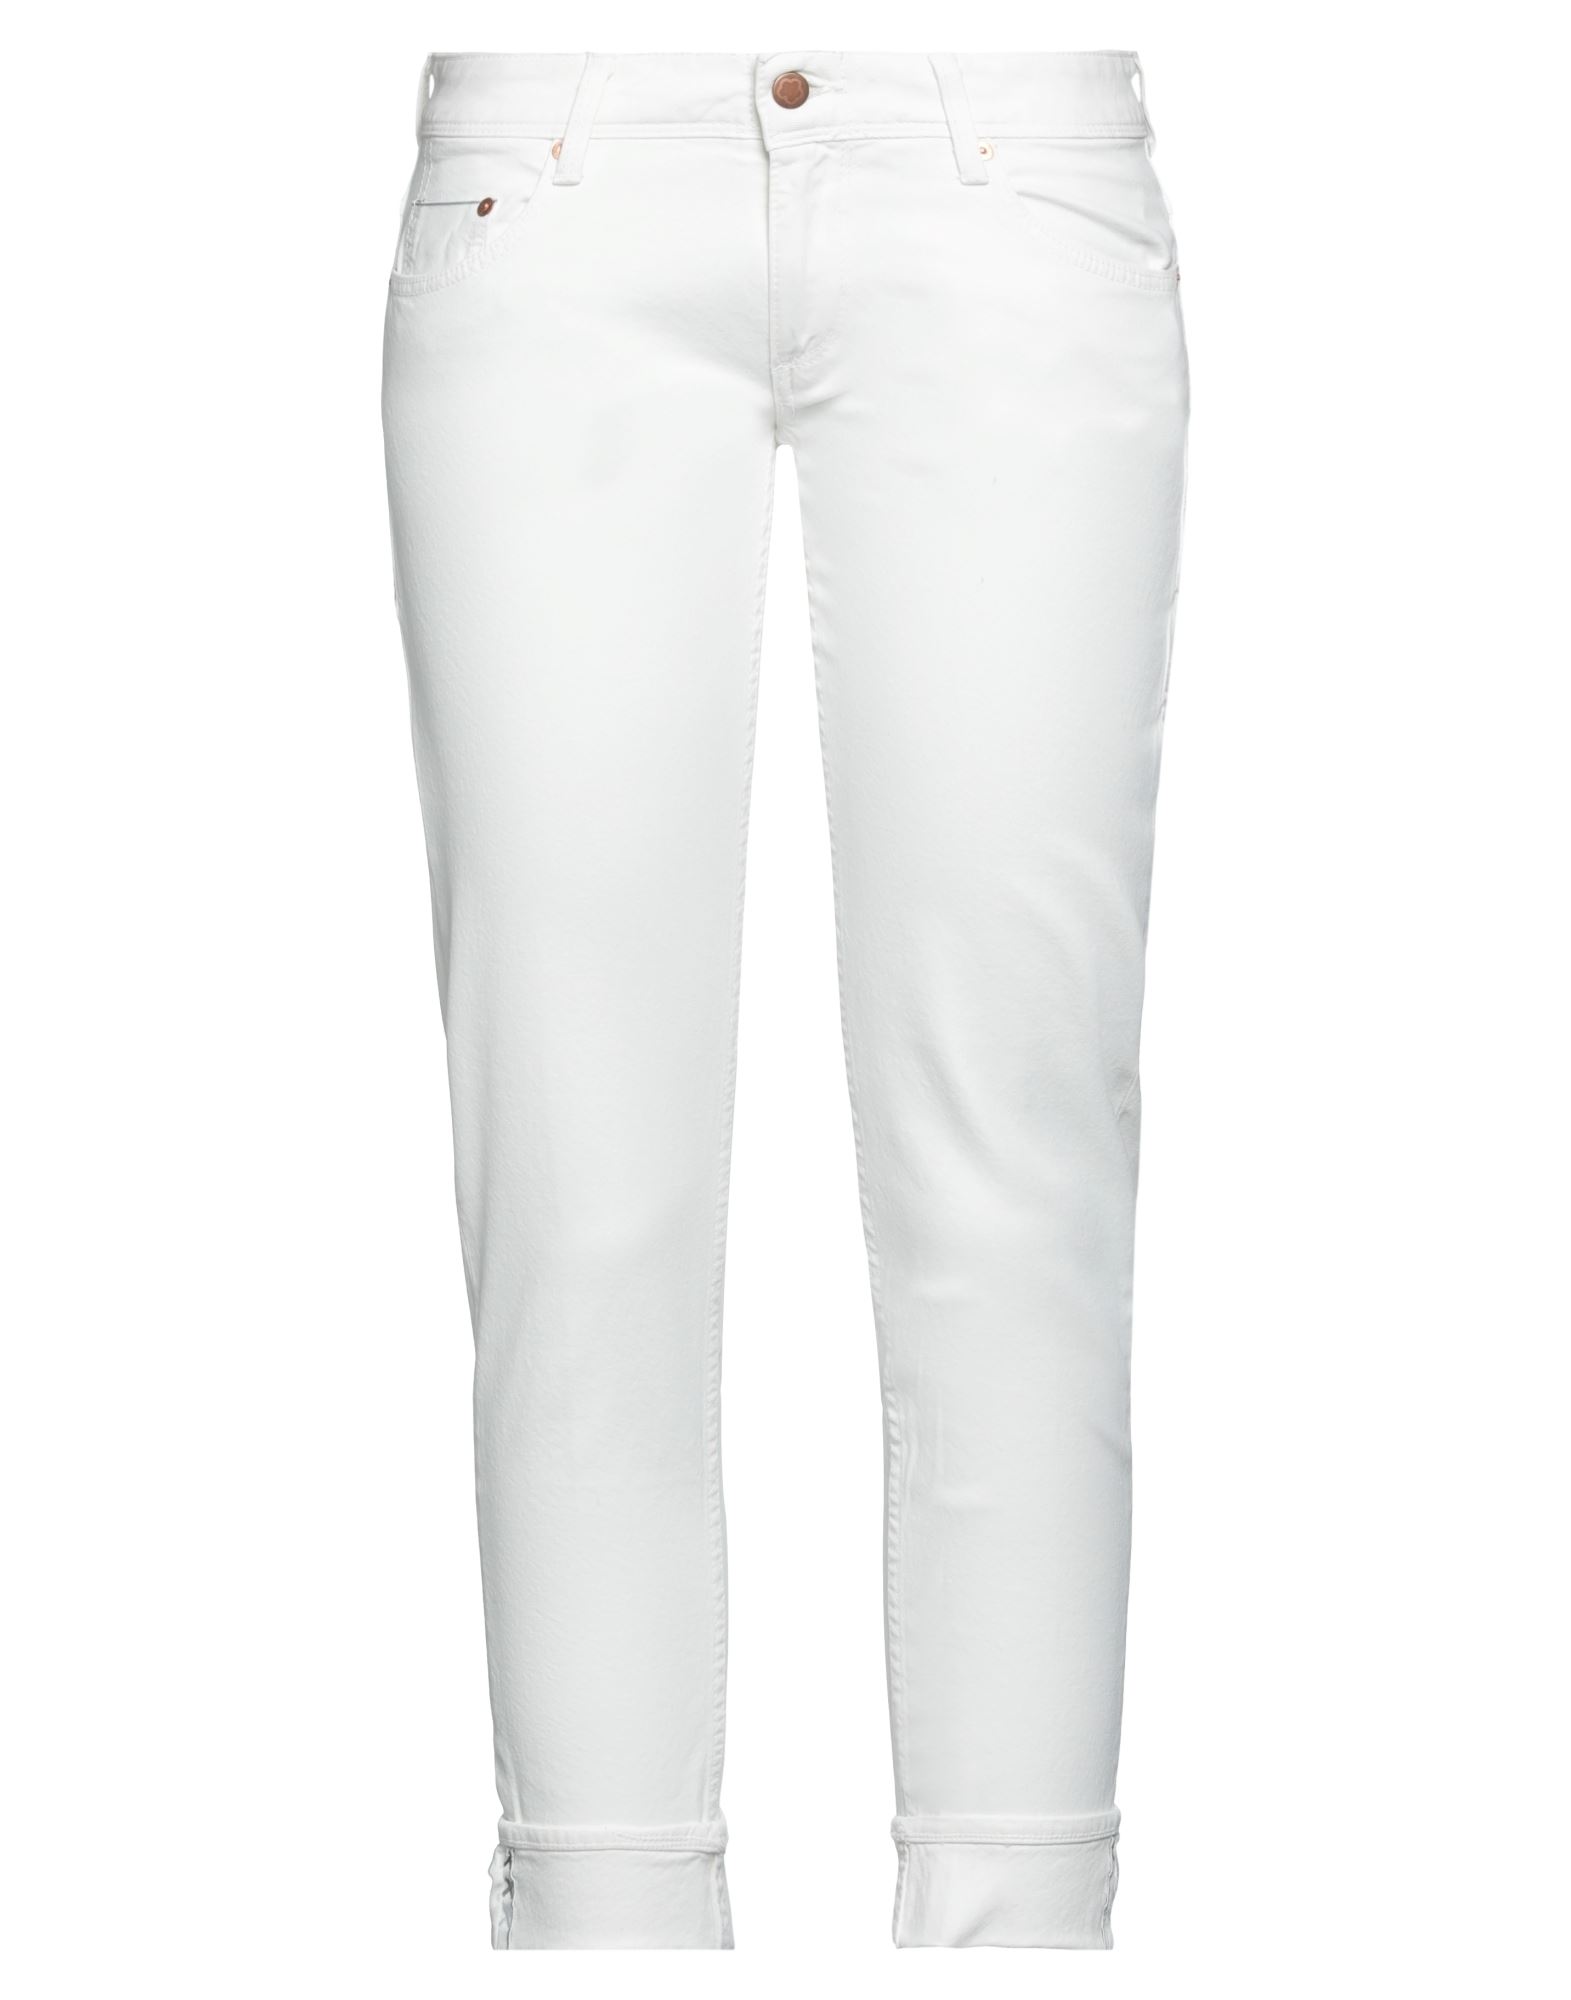 Shop Care Label Woman Jeans White Size 29 Cotton, Elastane